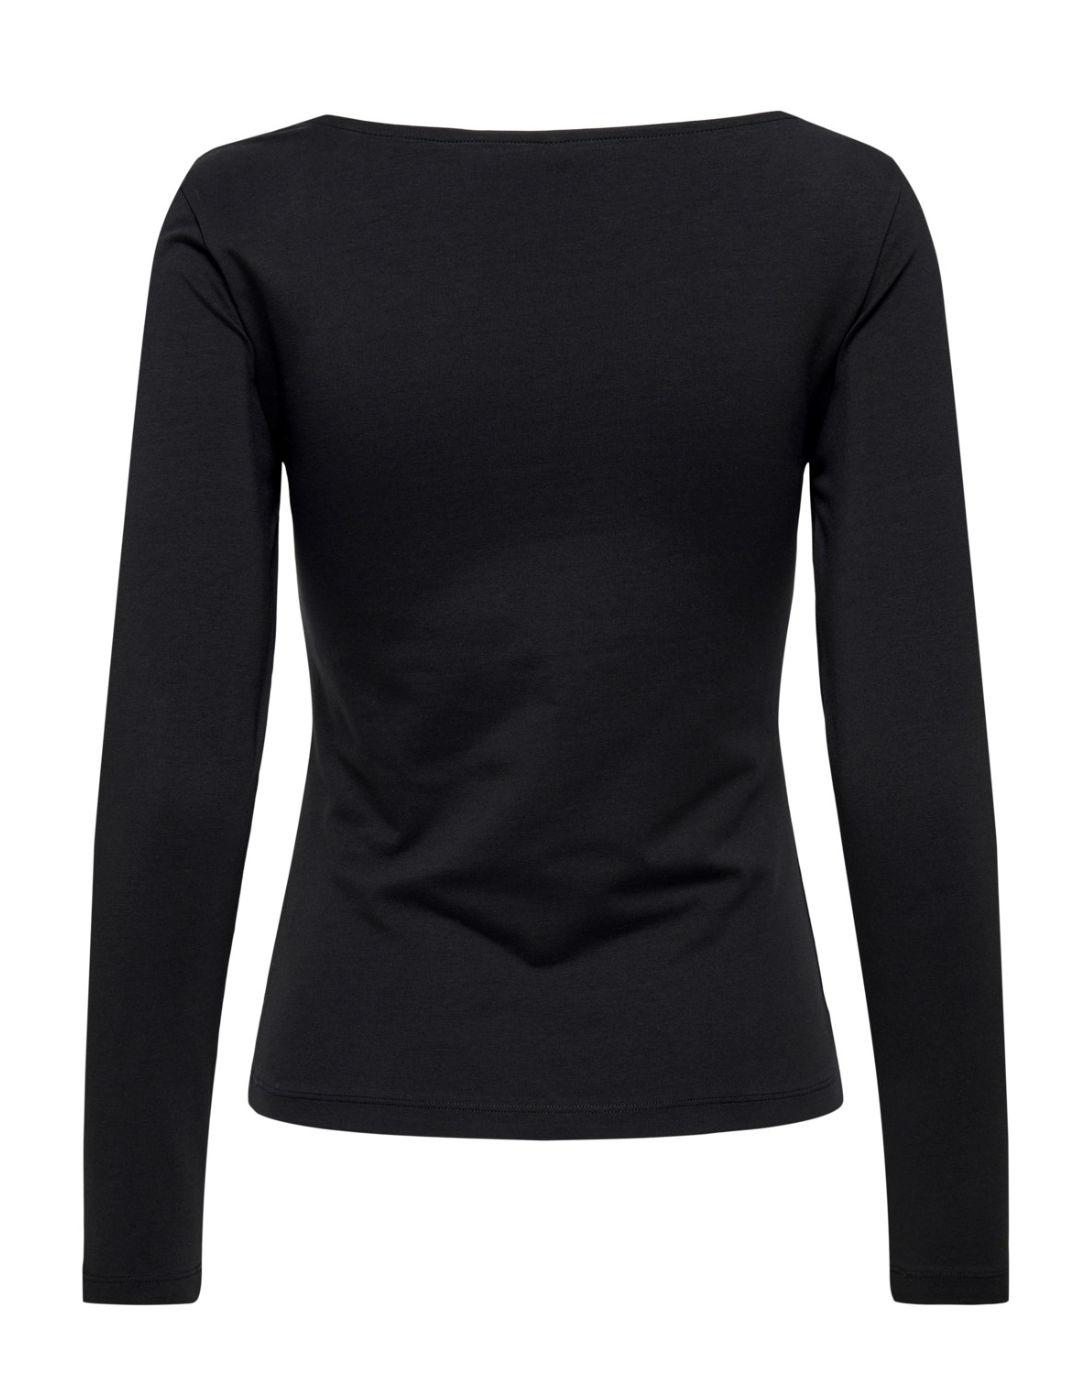 Camiseta Only Lopi negra escote asimétrico para mujer